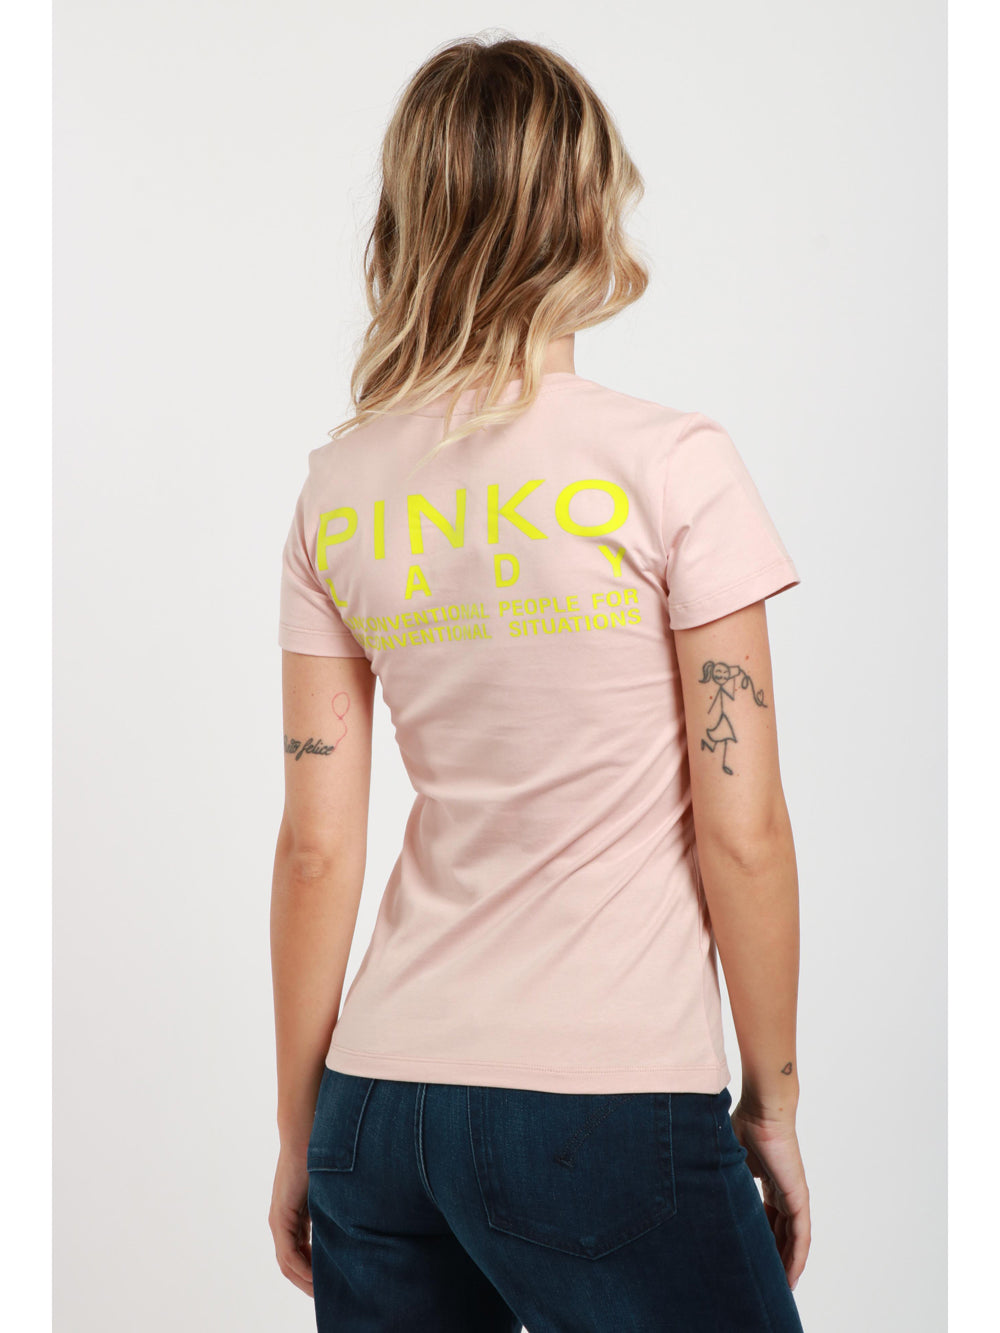 PINKO T-Shirt Bussolotto Girocollo in Cotone Cipria con Logo e Scritta Gialla Rosa/lime